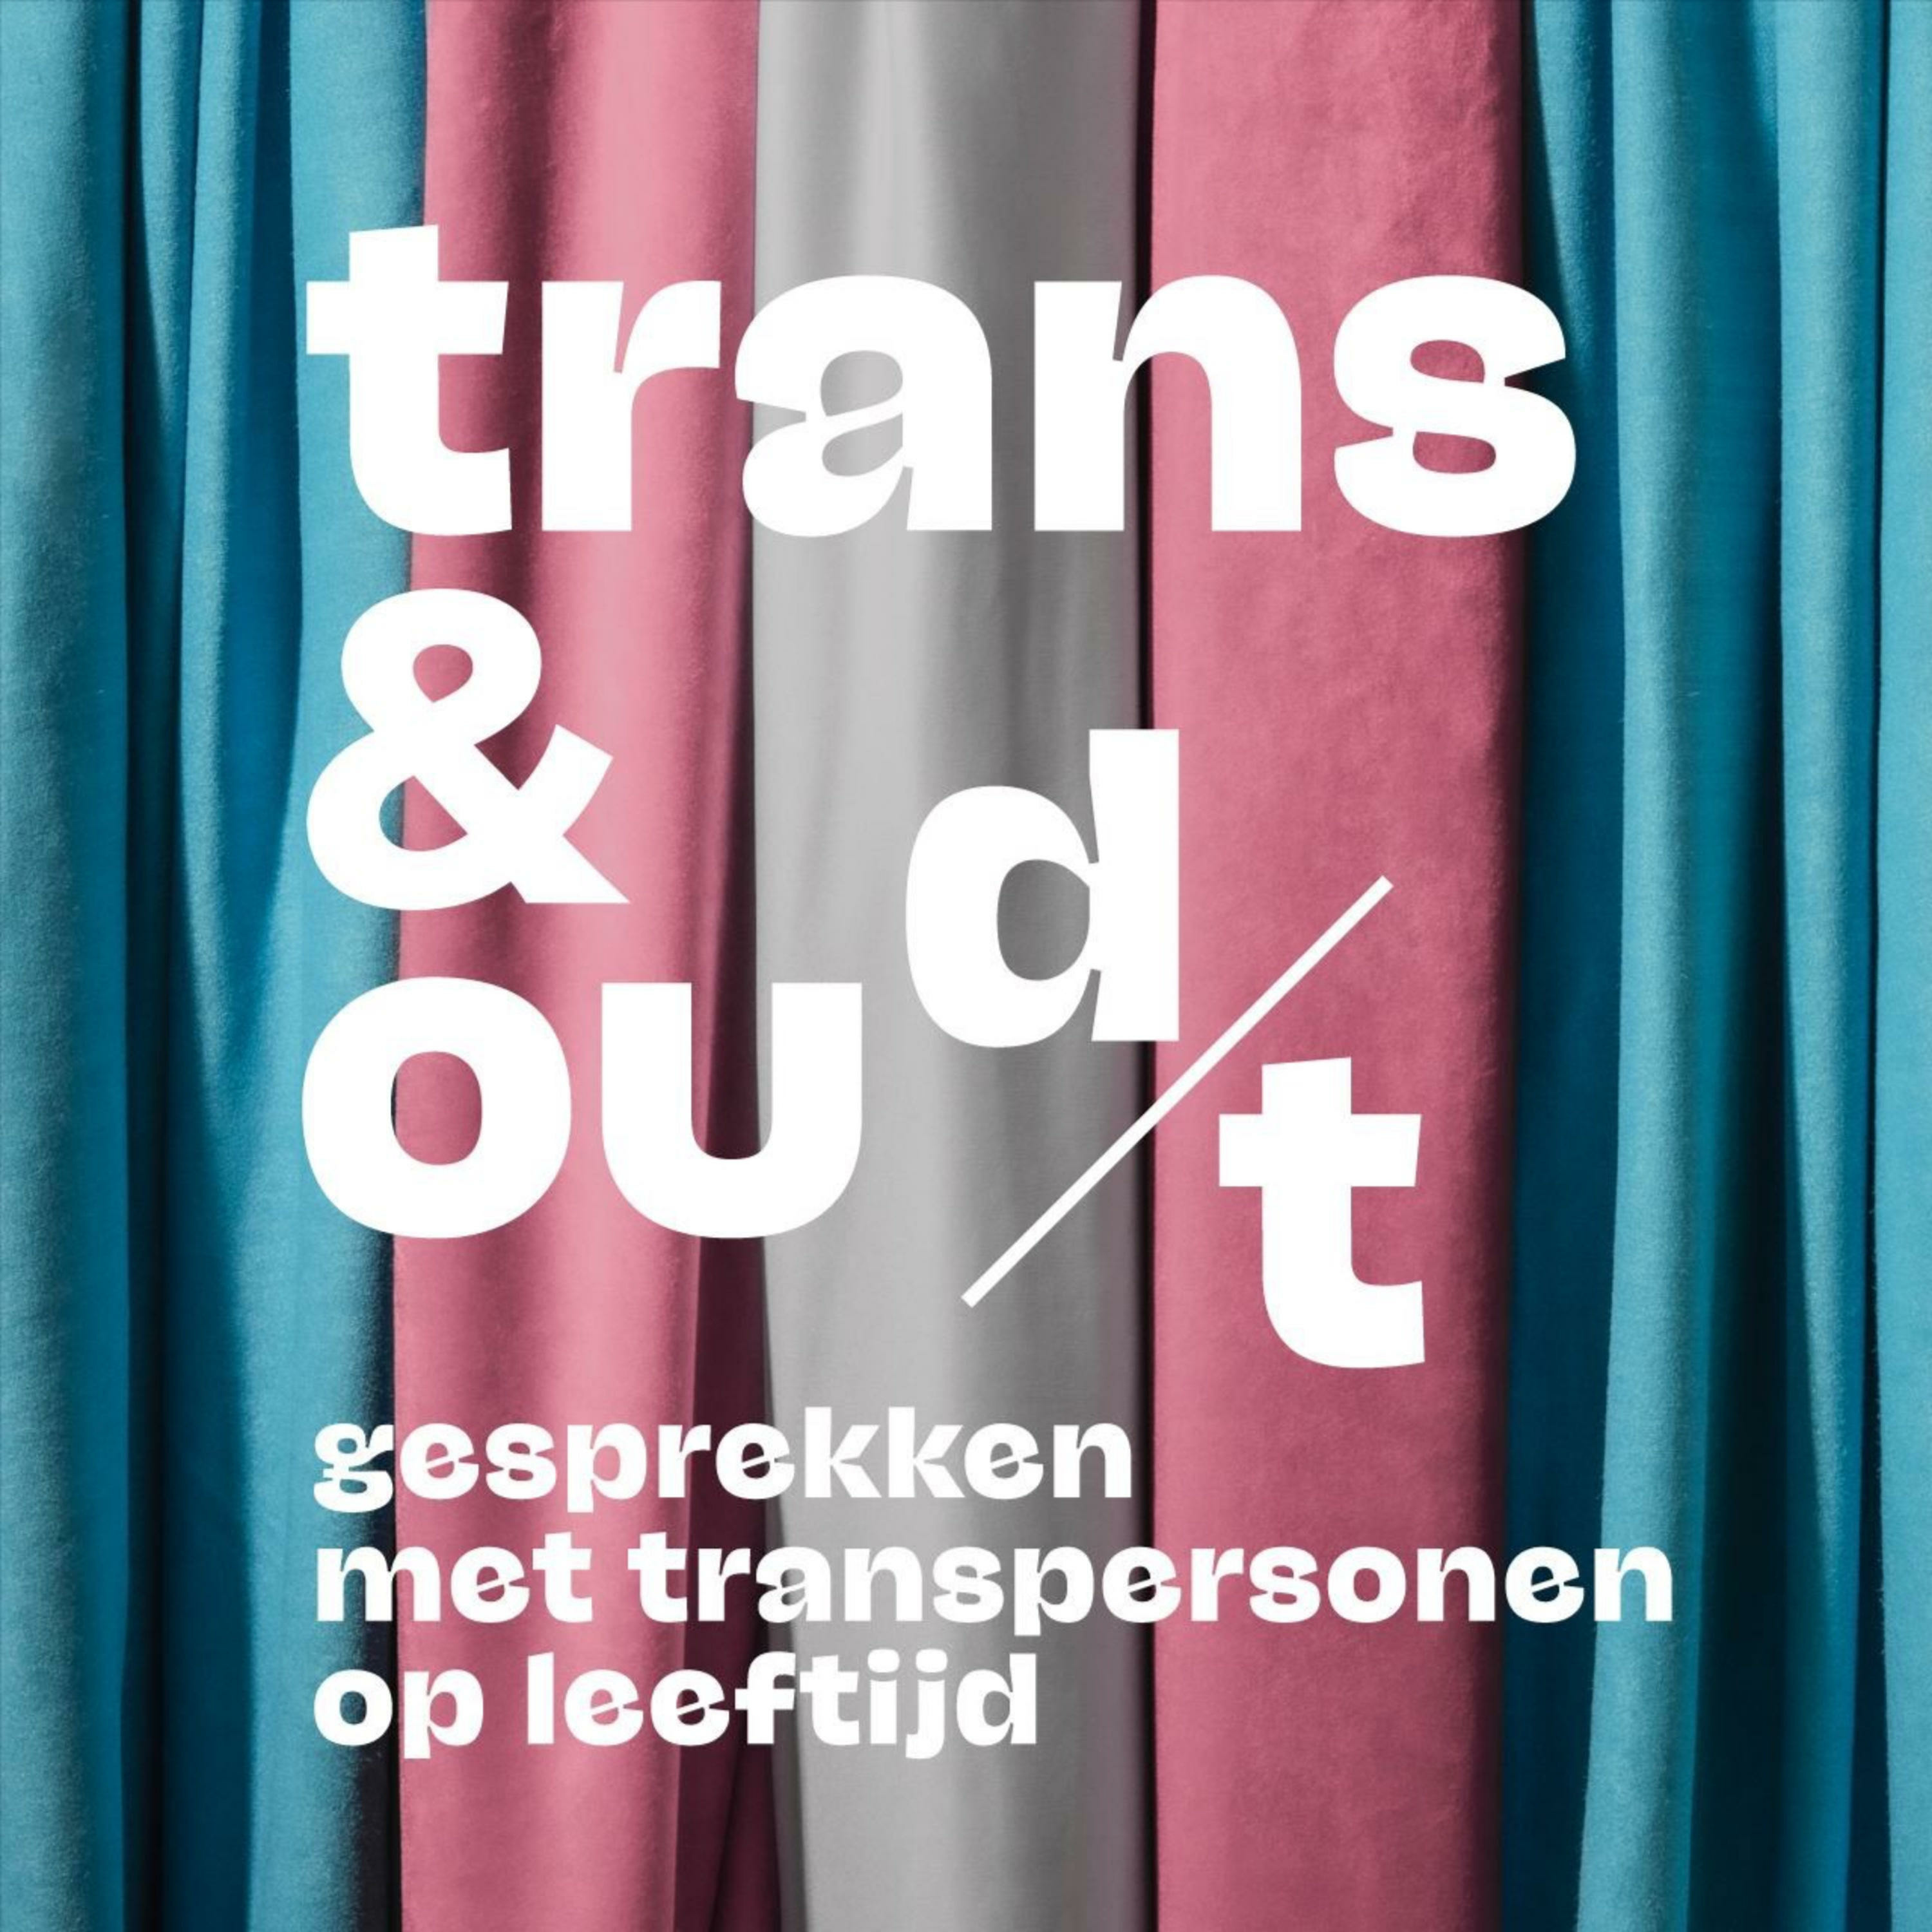 In witte letters staat "Trans en Oud(t) - gesprekken met transpersonen op leeftijd" tegen de achtergrond van een verticale transvlag.